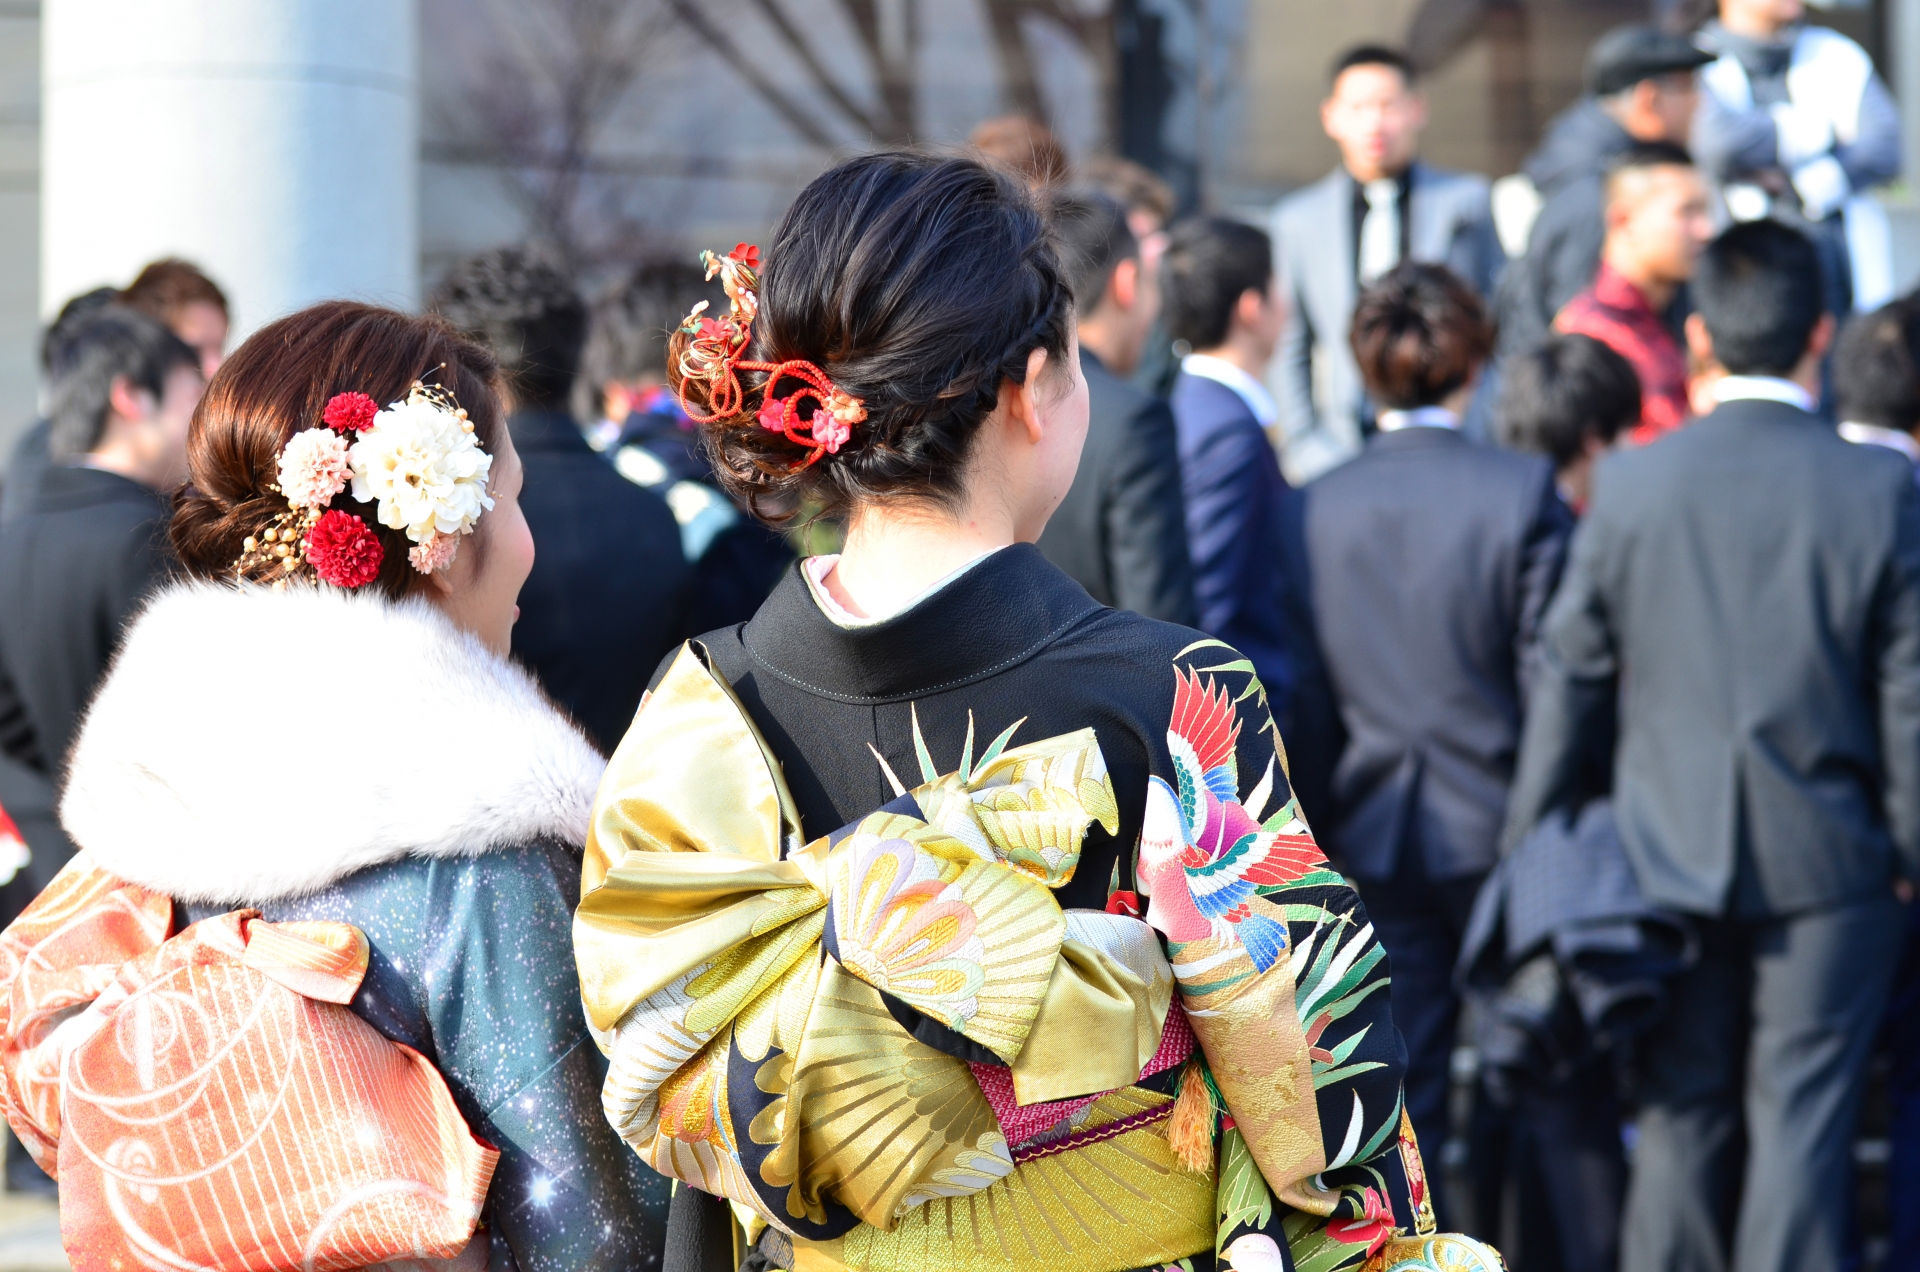  Vào các dịp lễ hội như Tết, các quý cô người Nhật thường diện Kimono hoặc Yukata nhiều họa tiết và tóc đính thêm phụ kiện khi xuống phố. (Ảnh: Jimotoru)